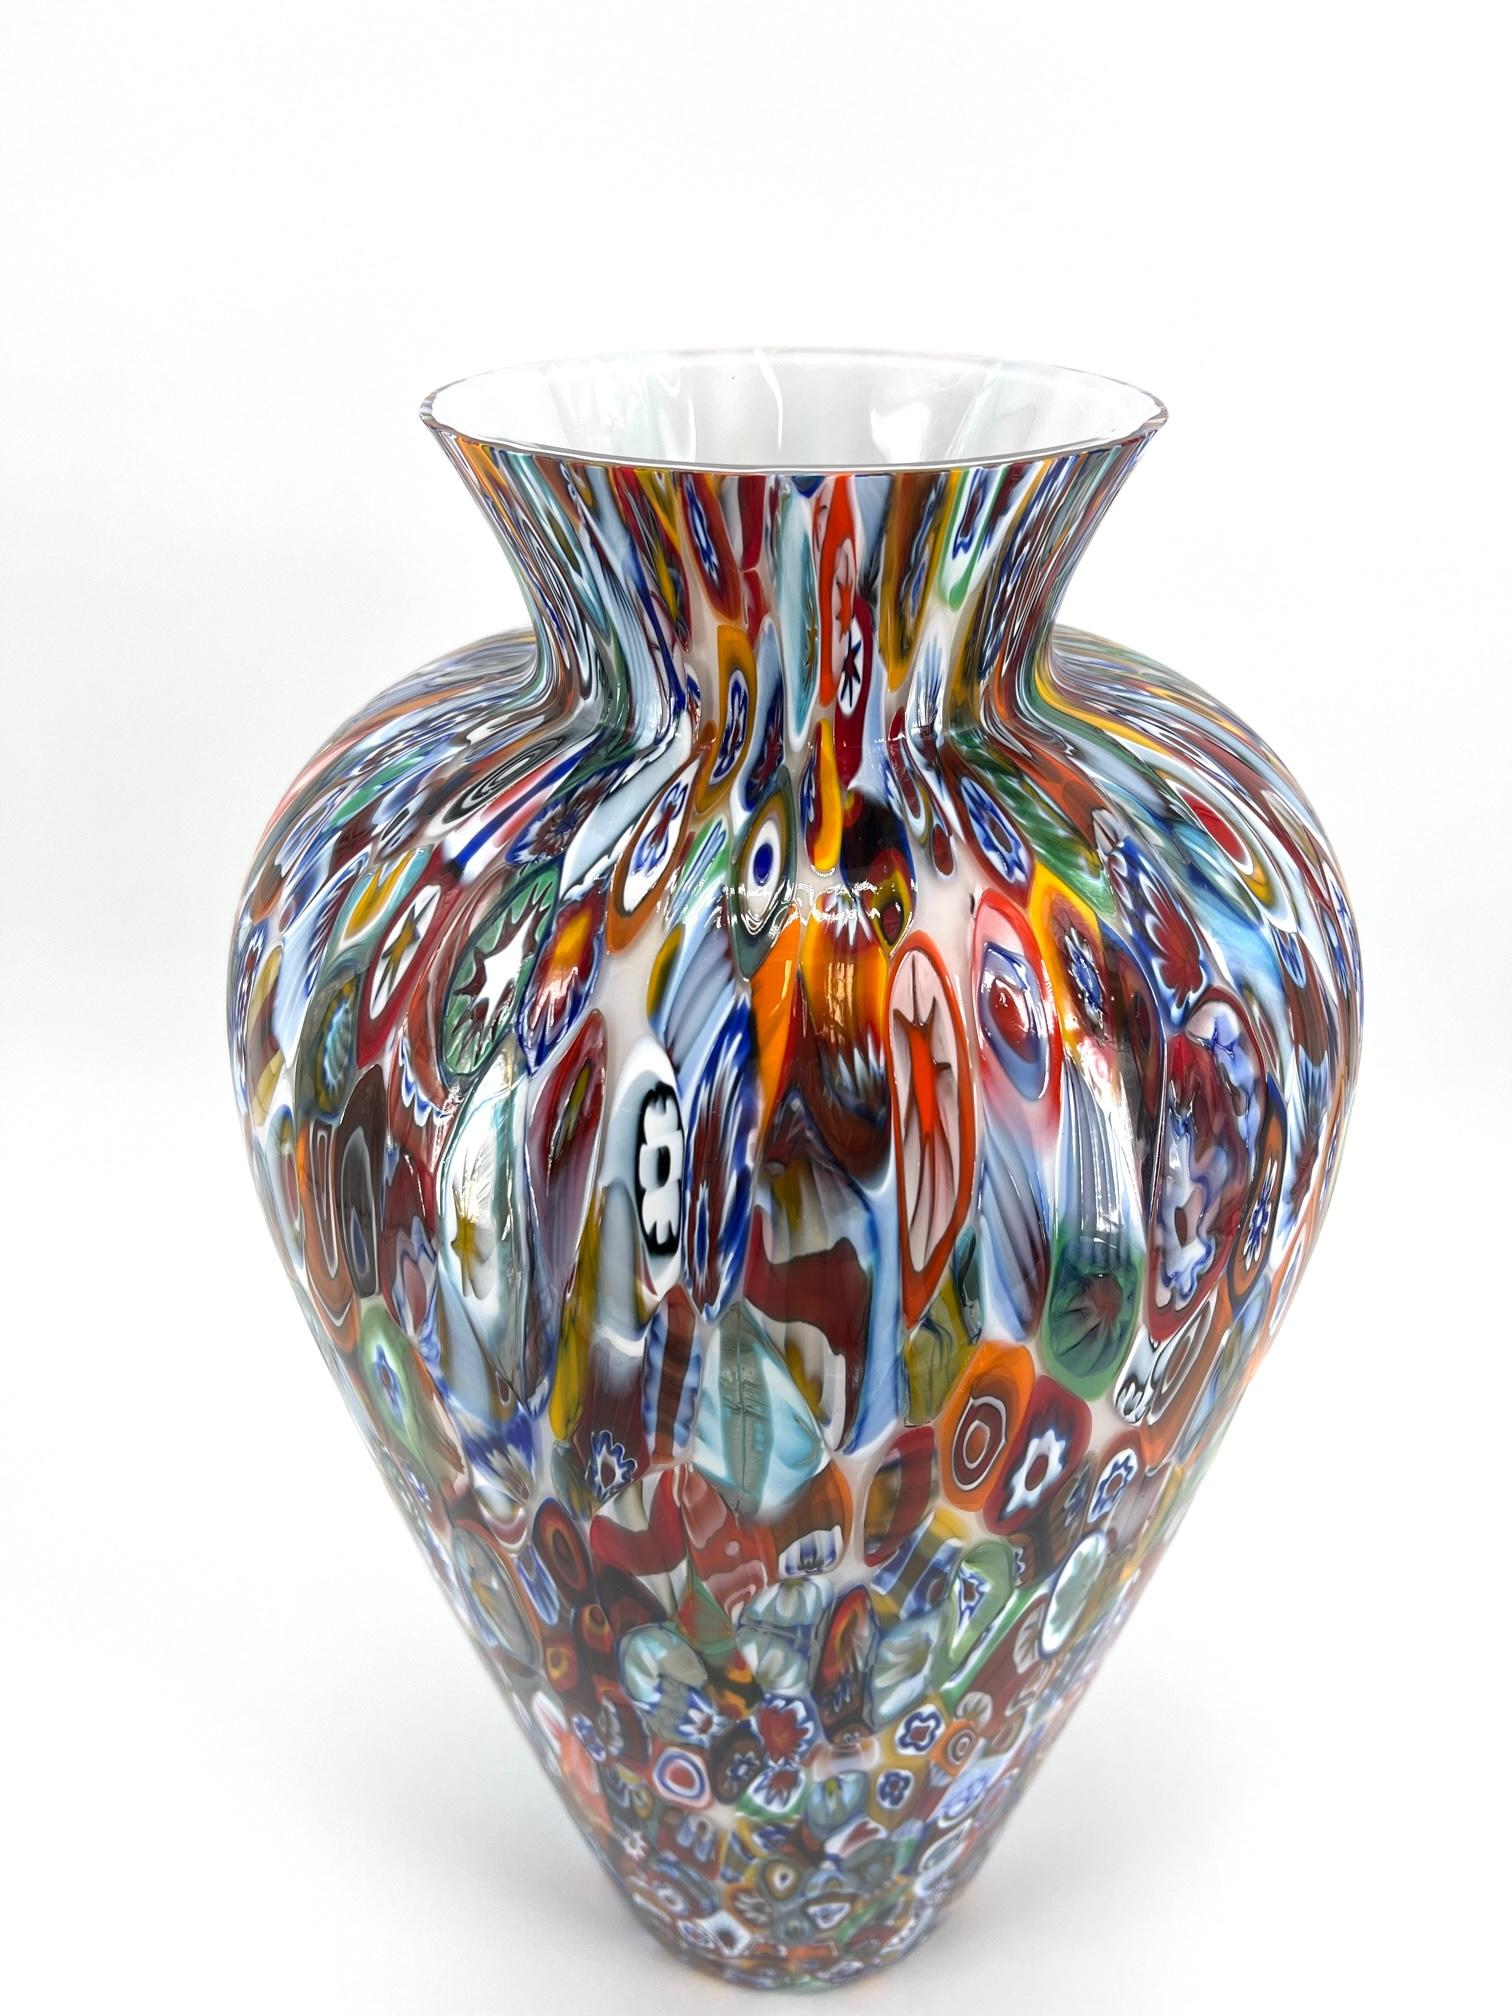 Italian 1295 Murano Hand Made Glass Millefiori Murrine Vase Big Size Height 18, 5 Inches For Sale